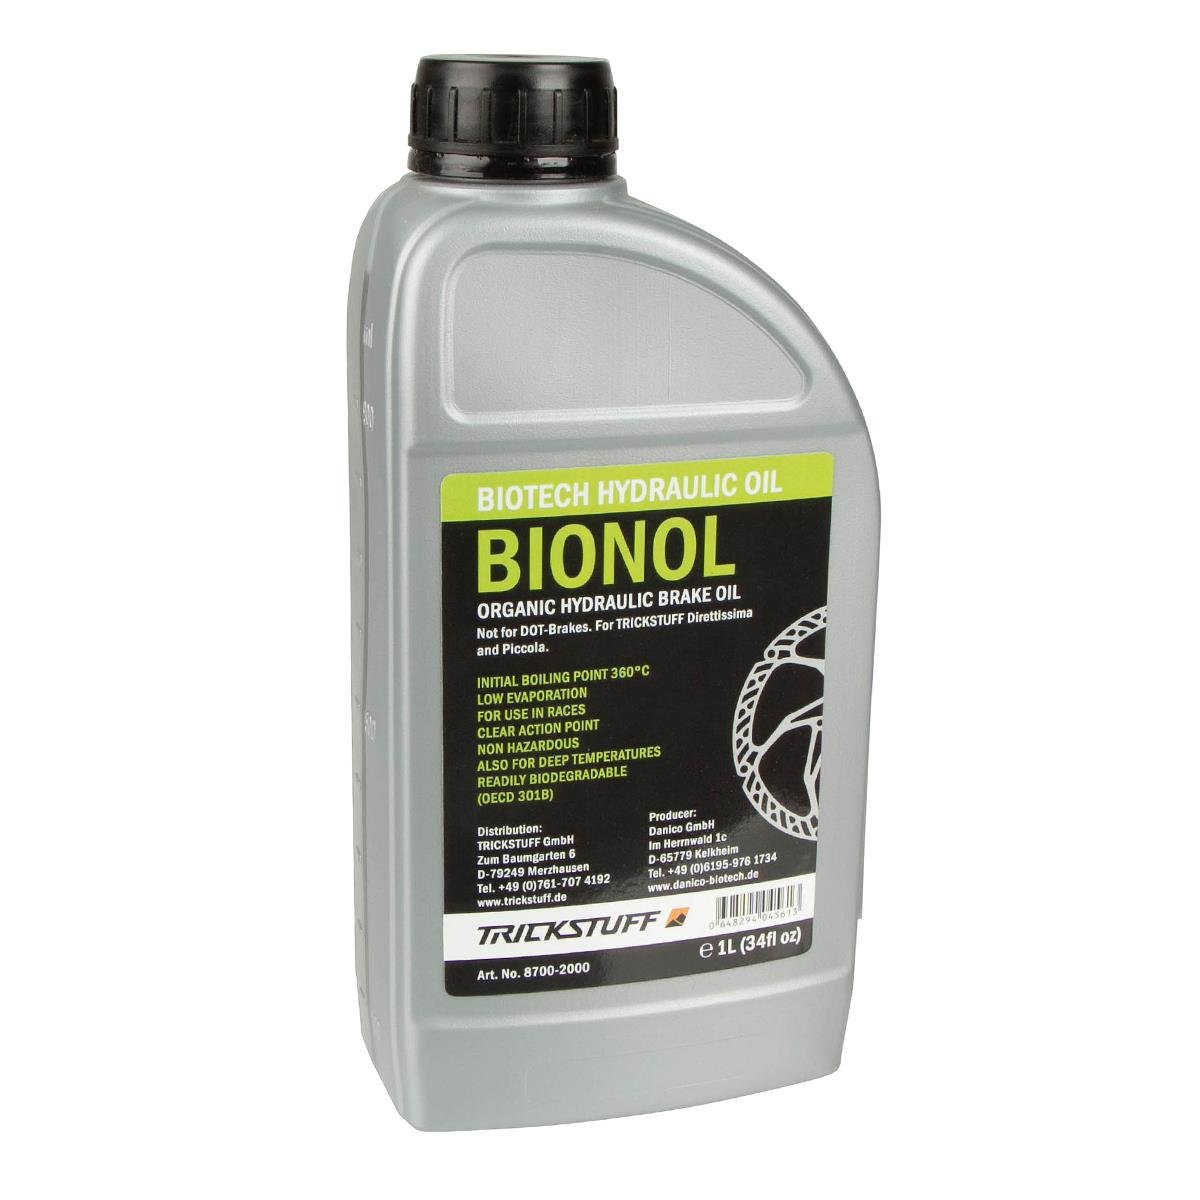 Trickstuff Huile Hydraulique Bionol 1000 ml